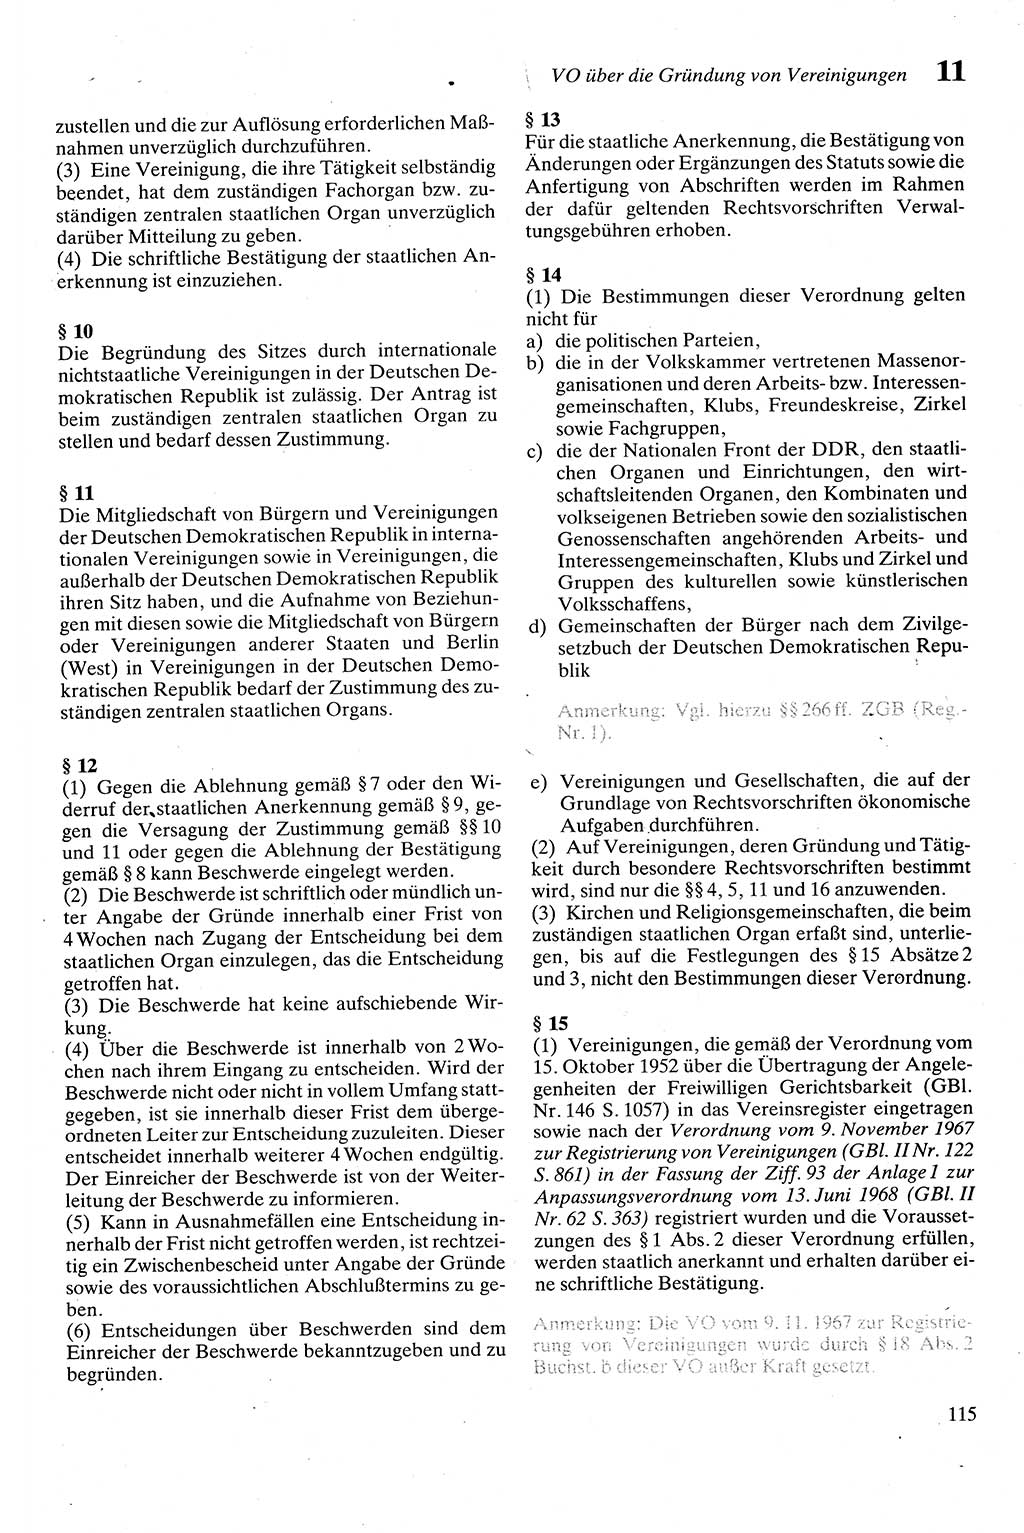 Zivilgesetzbuch (ZVG) sowie angrenzende Gesetze und Bestimmungen [Deutsche Demokratische Republik (DDR)] 1975, Seite 115 (ZGB Ges. Best. DDR 1975, S. 115)